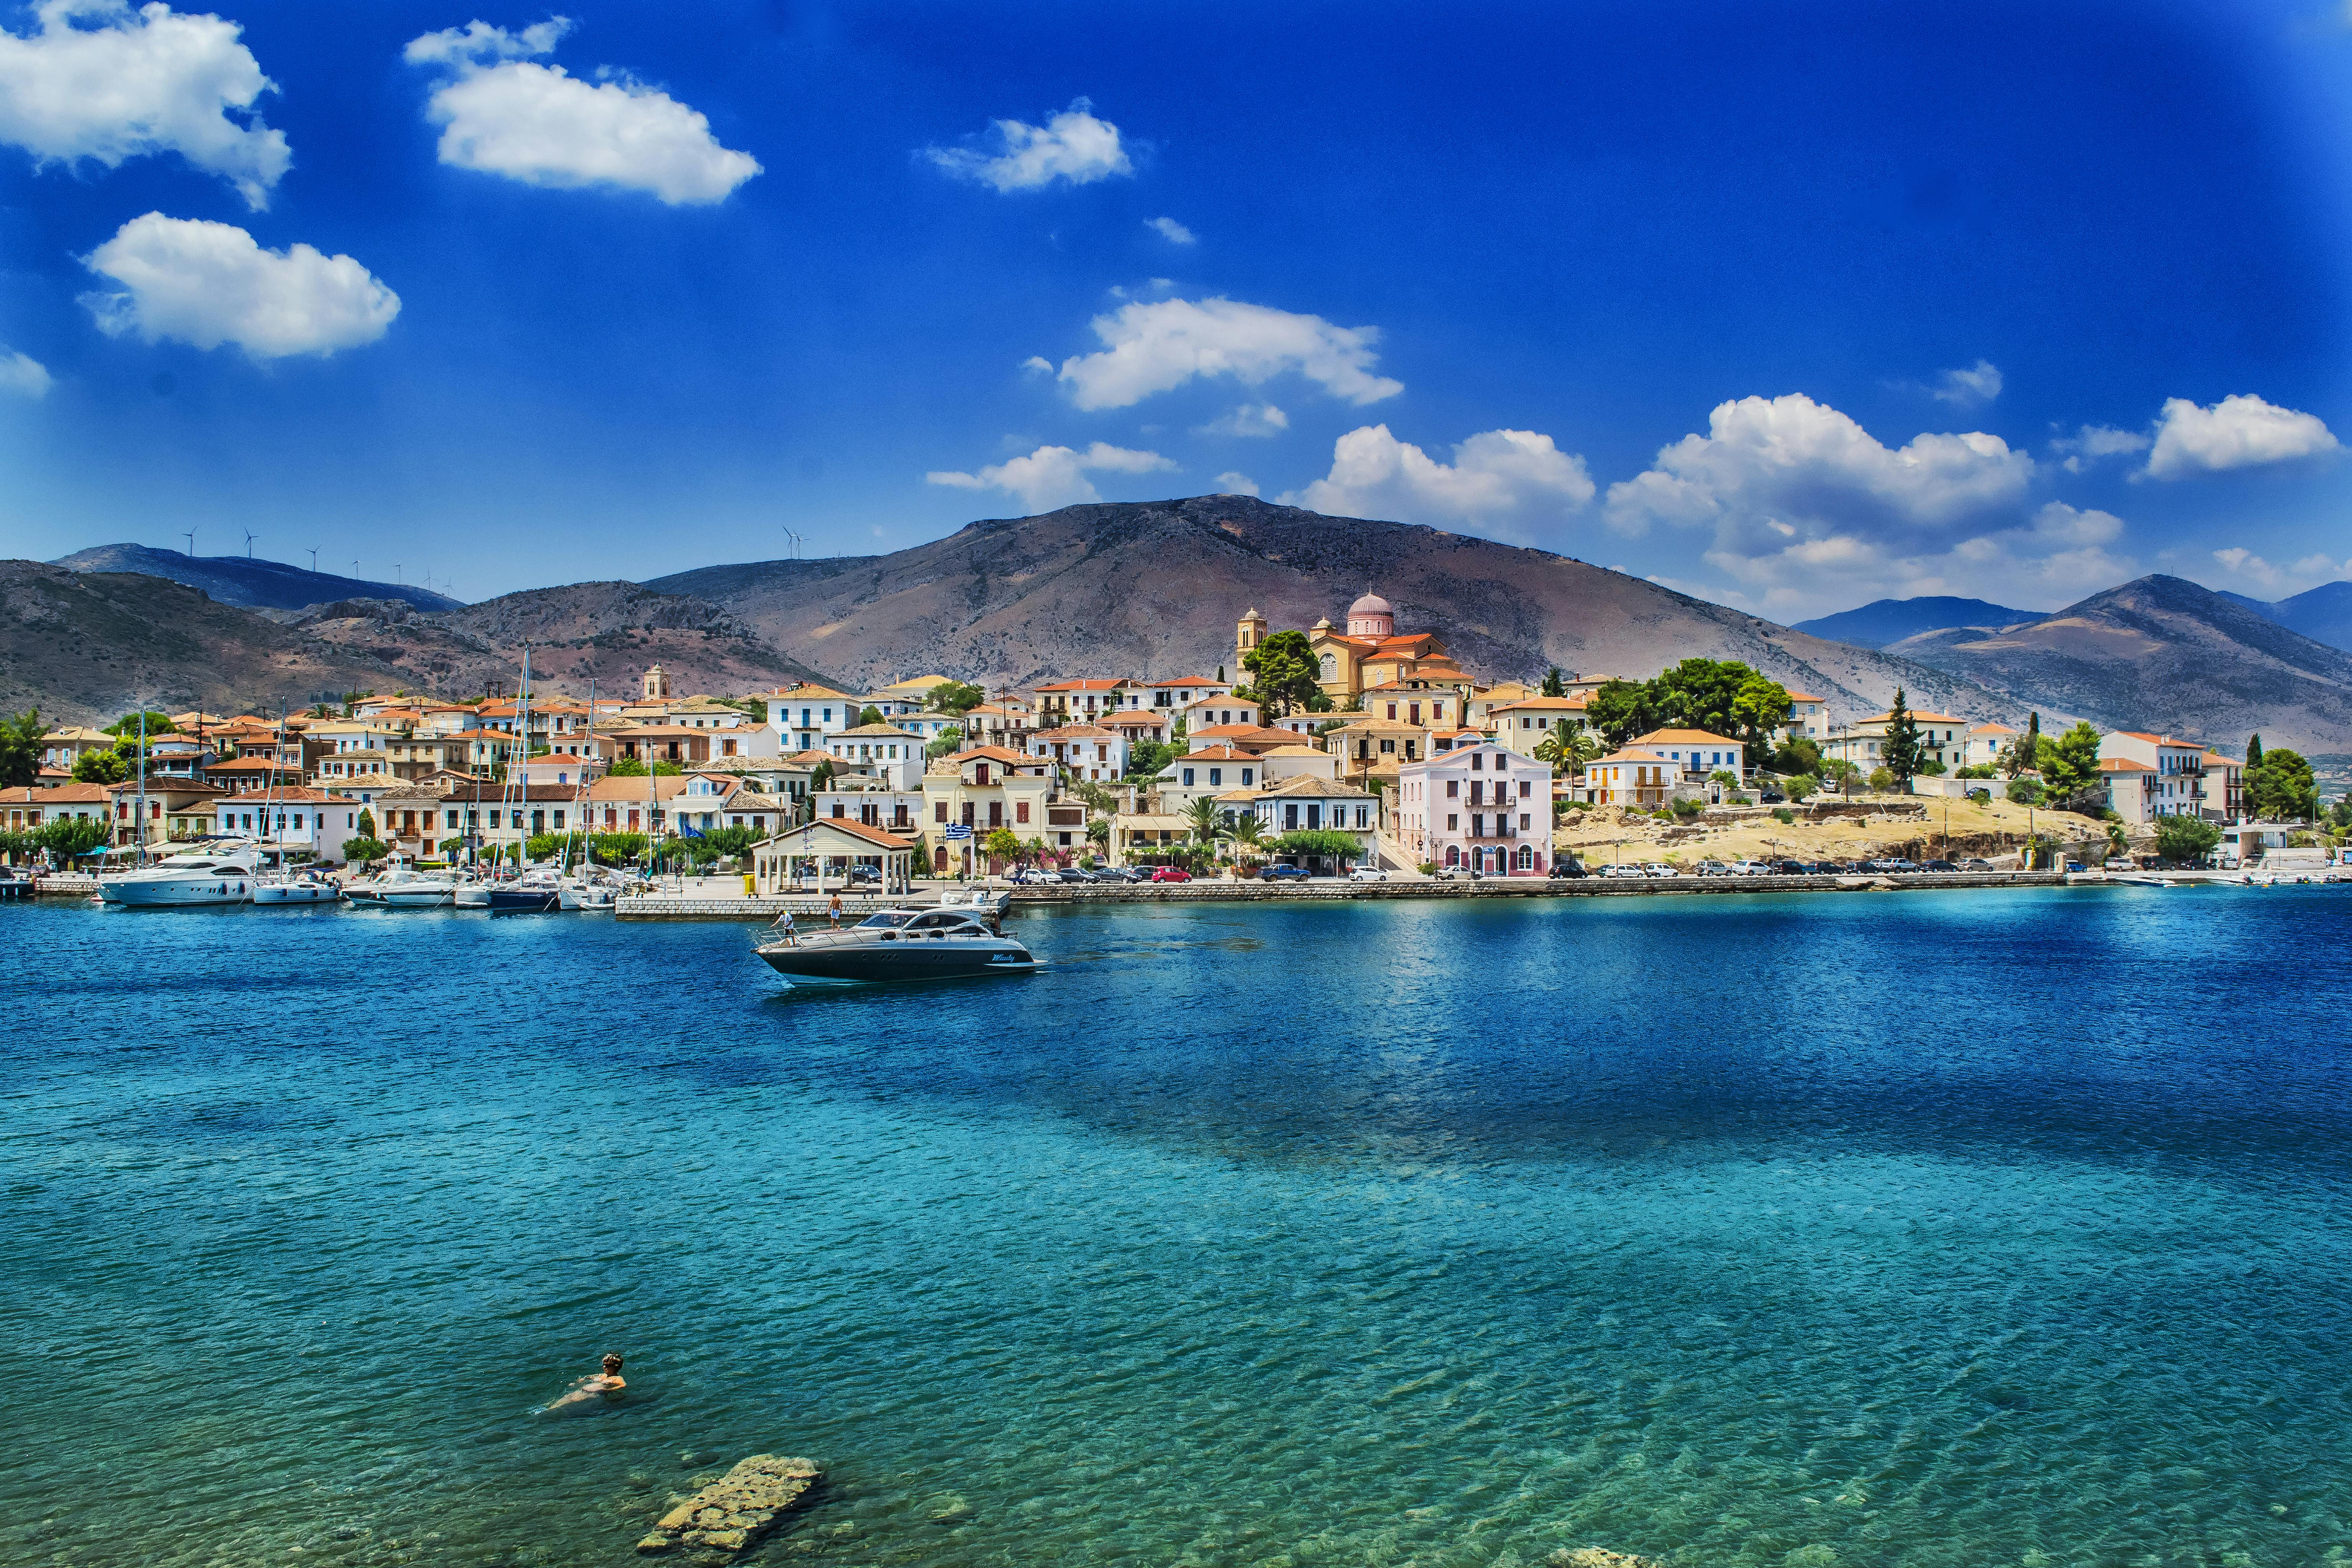 Mediterranean Sea Photos, Download The BEST Free Mediterranean Sea Stock  Photos & HD Images